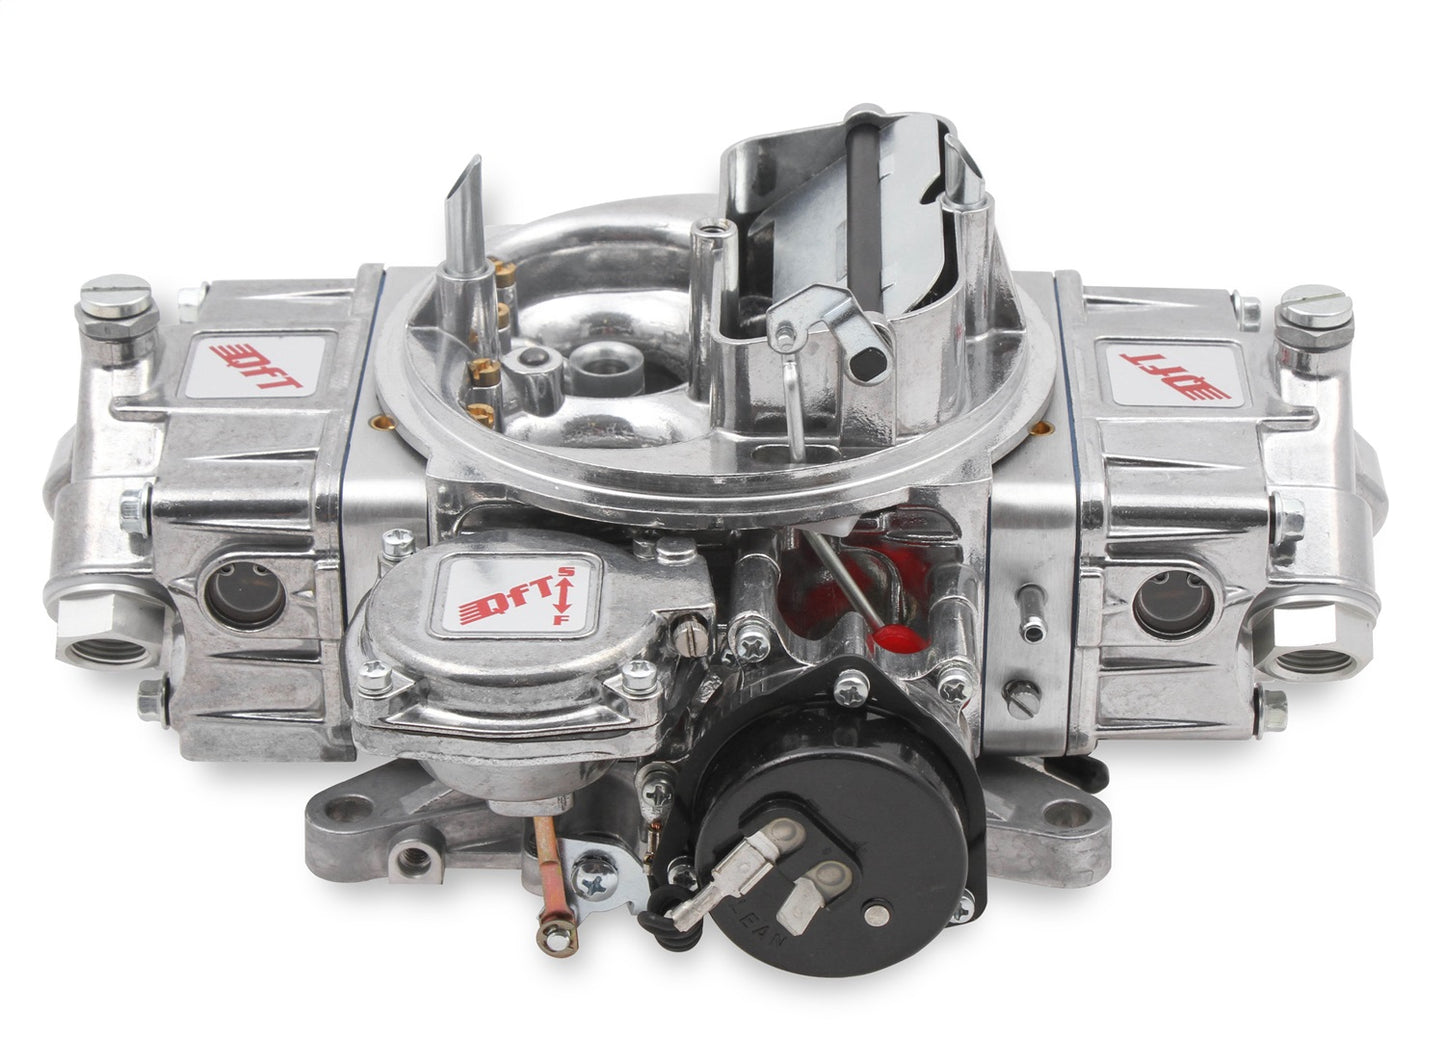 Quick Fuel Technology - HR-680-VS - Carburetor -  Hot Rod Series Carburetor